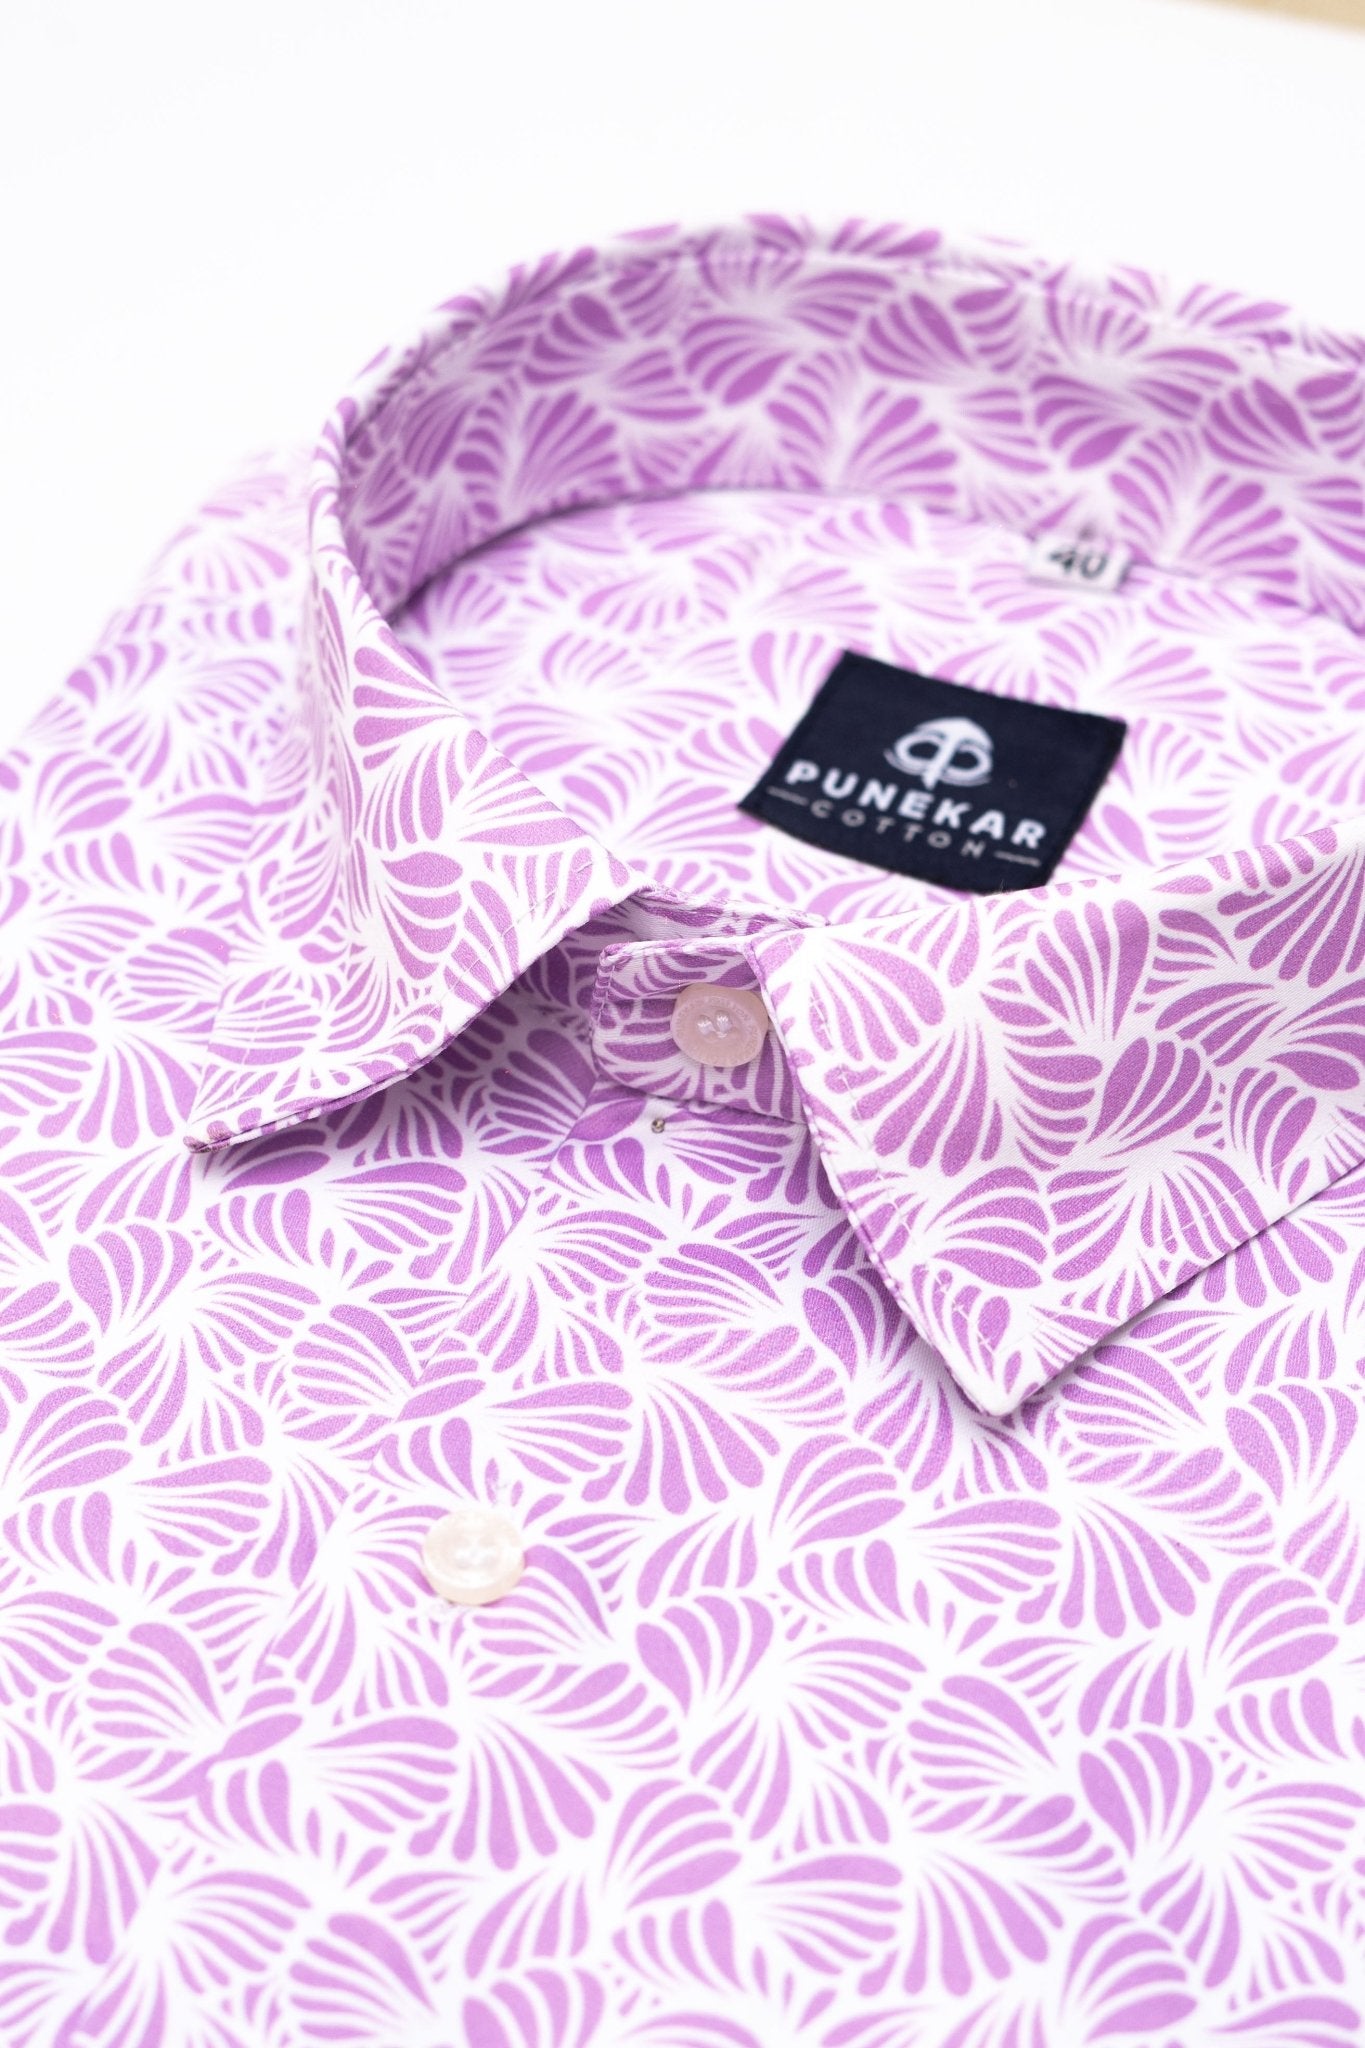 White Pink Color Leaf Printed Shirt For Men - Punekar Cotton